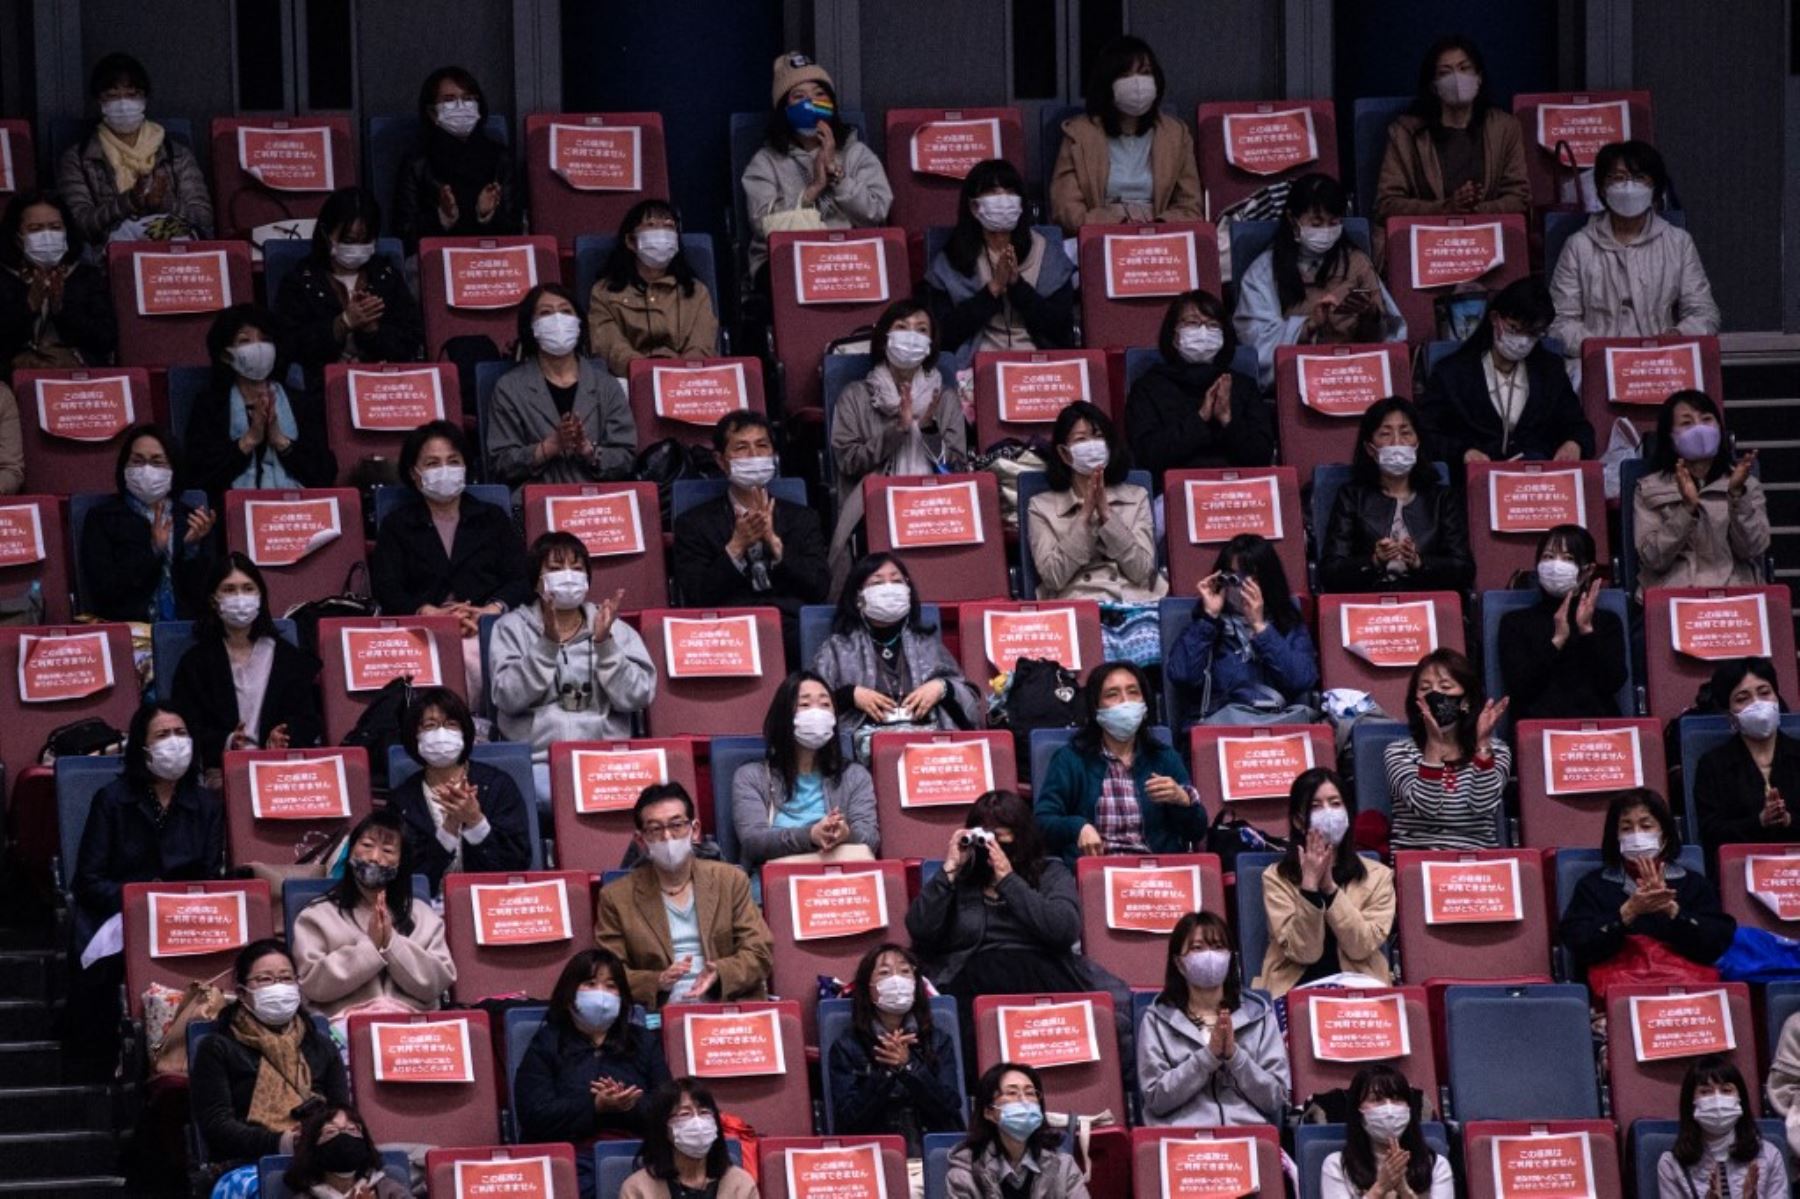 Los fanáticos mantienen la distancia social durante el evento de patinaje artístico ISU World Team Trophy en Osaka. Foto: AFP